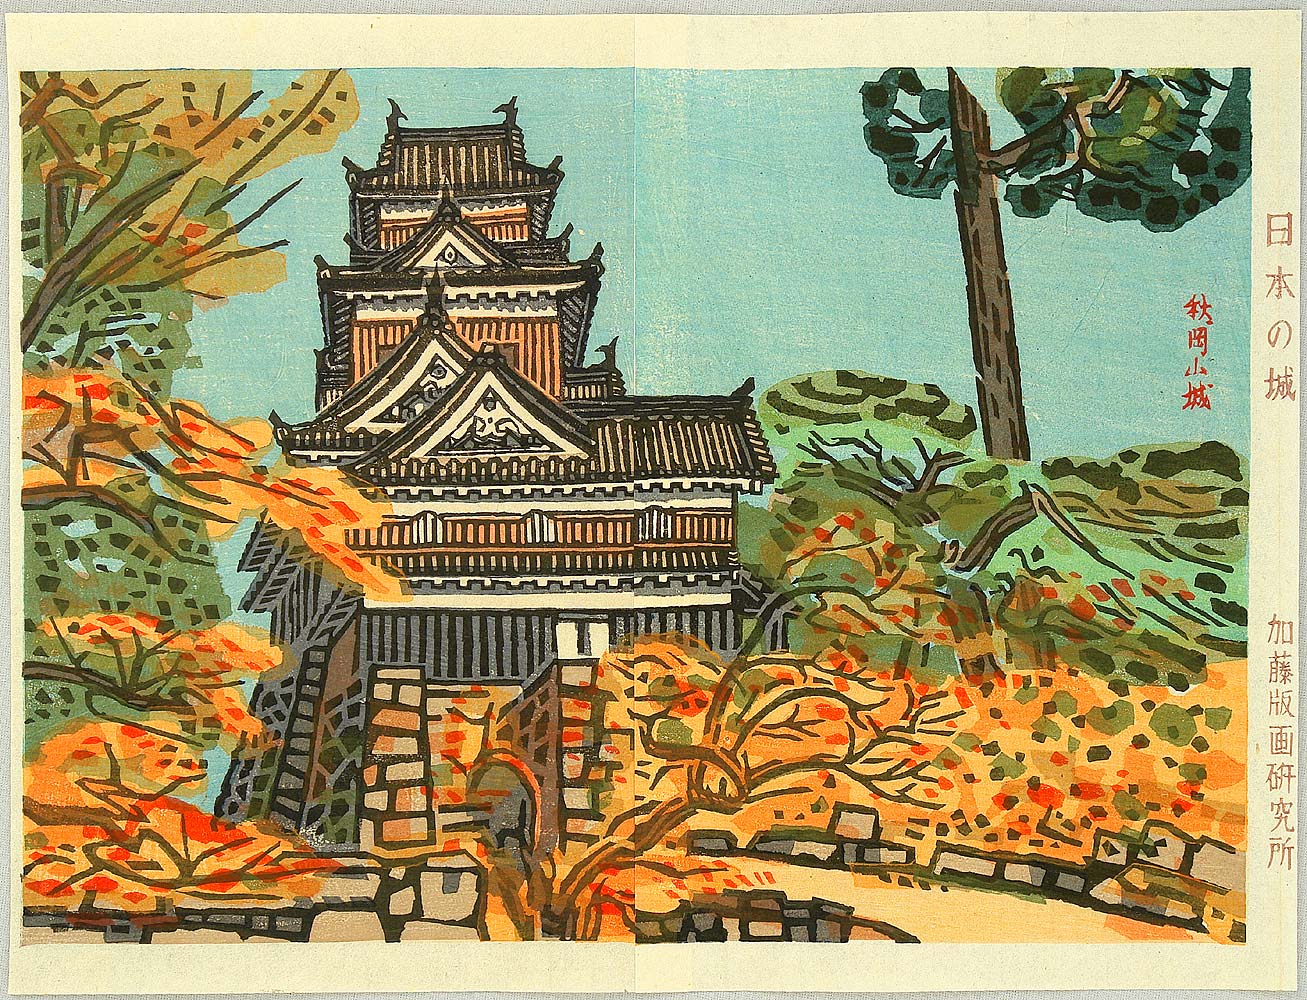 橋本興家: Okayama Castle in Autumn - Castles of Japan - Artelino 